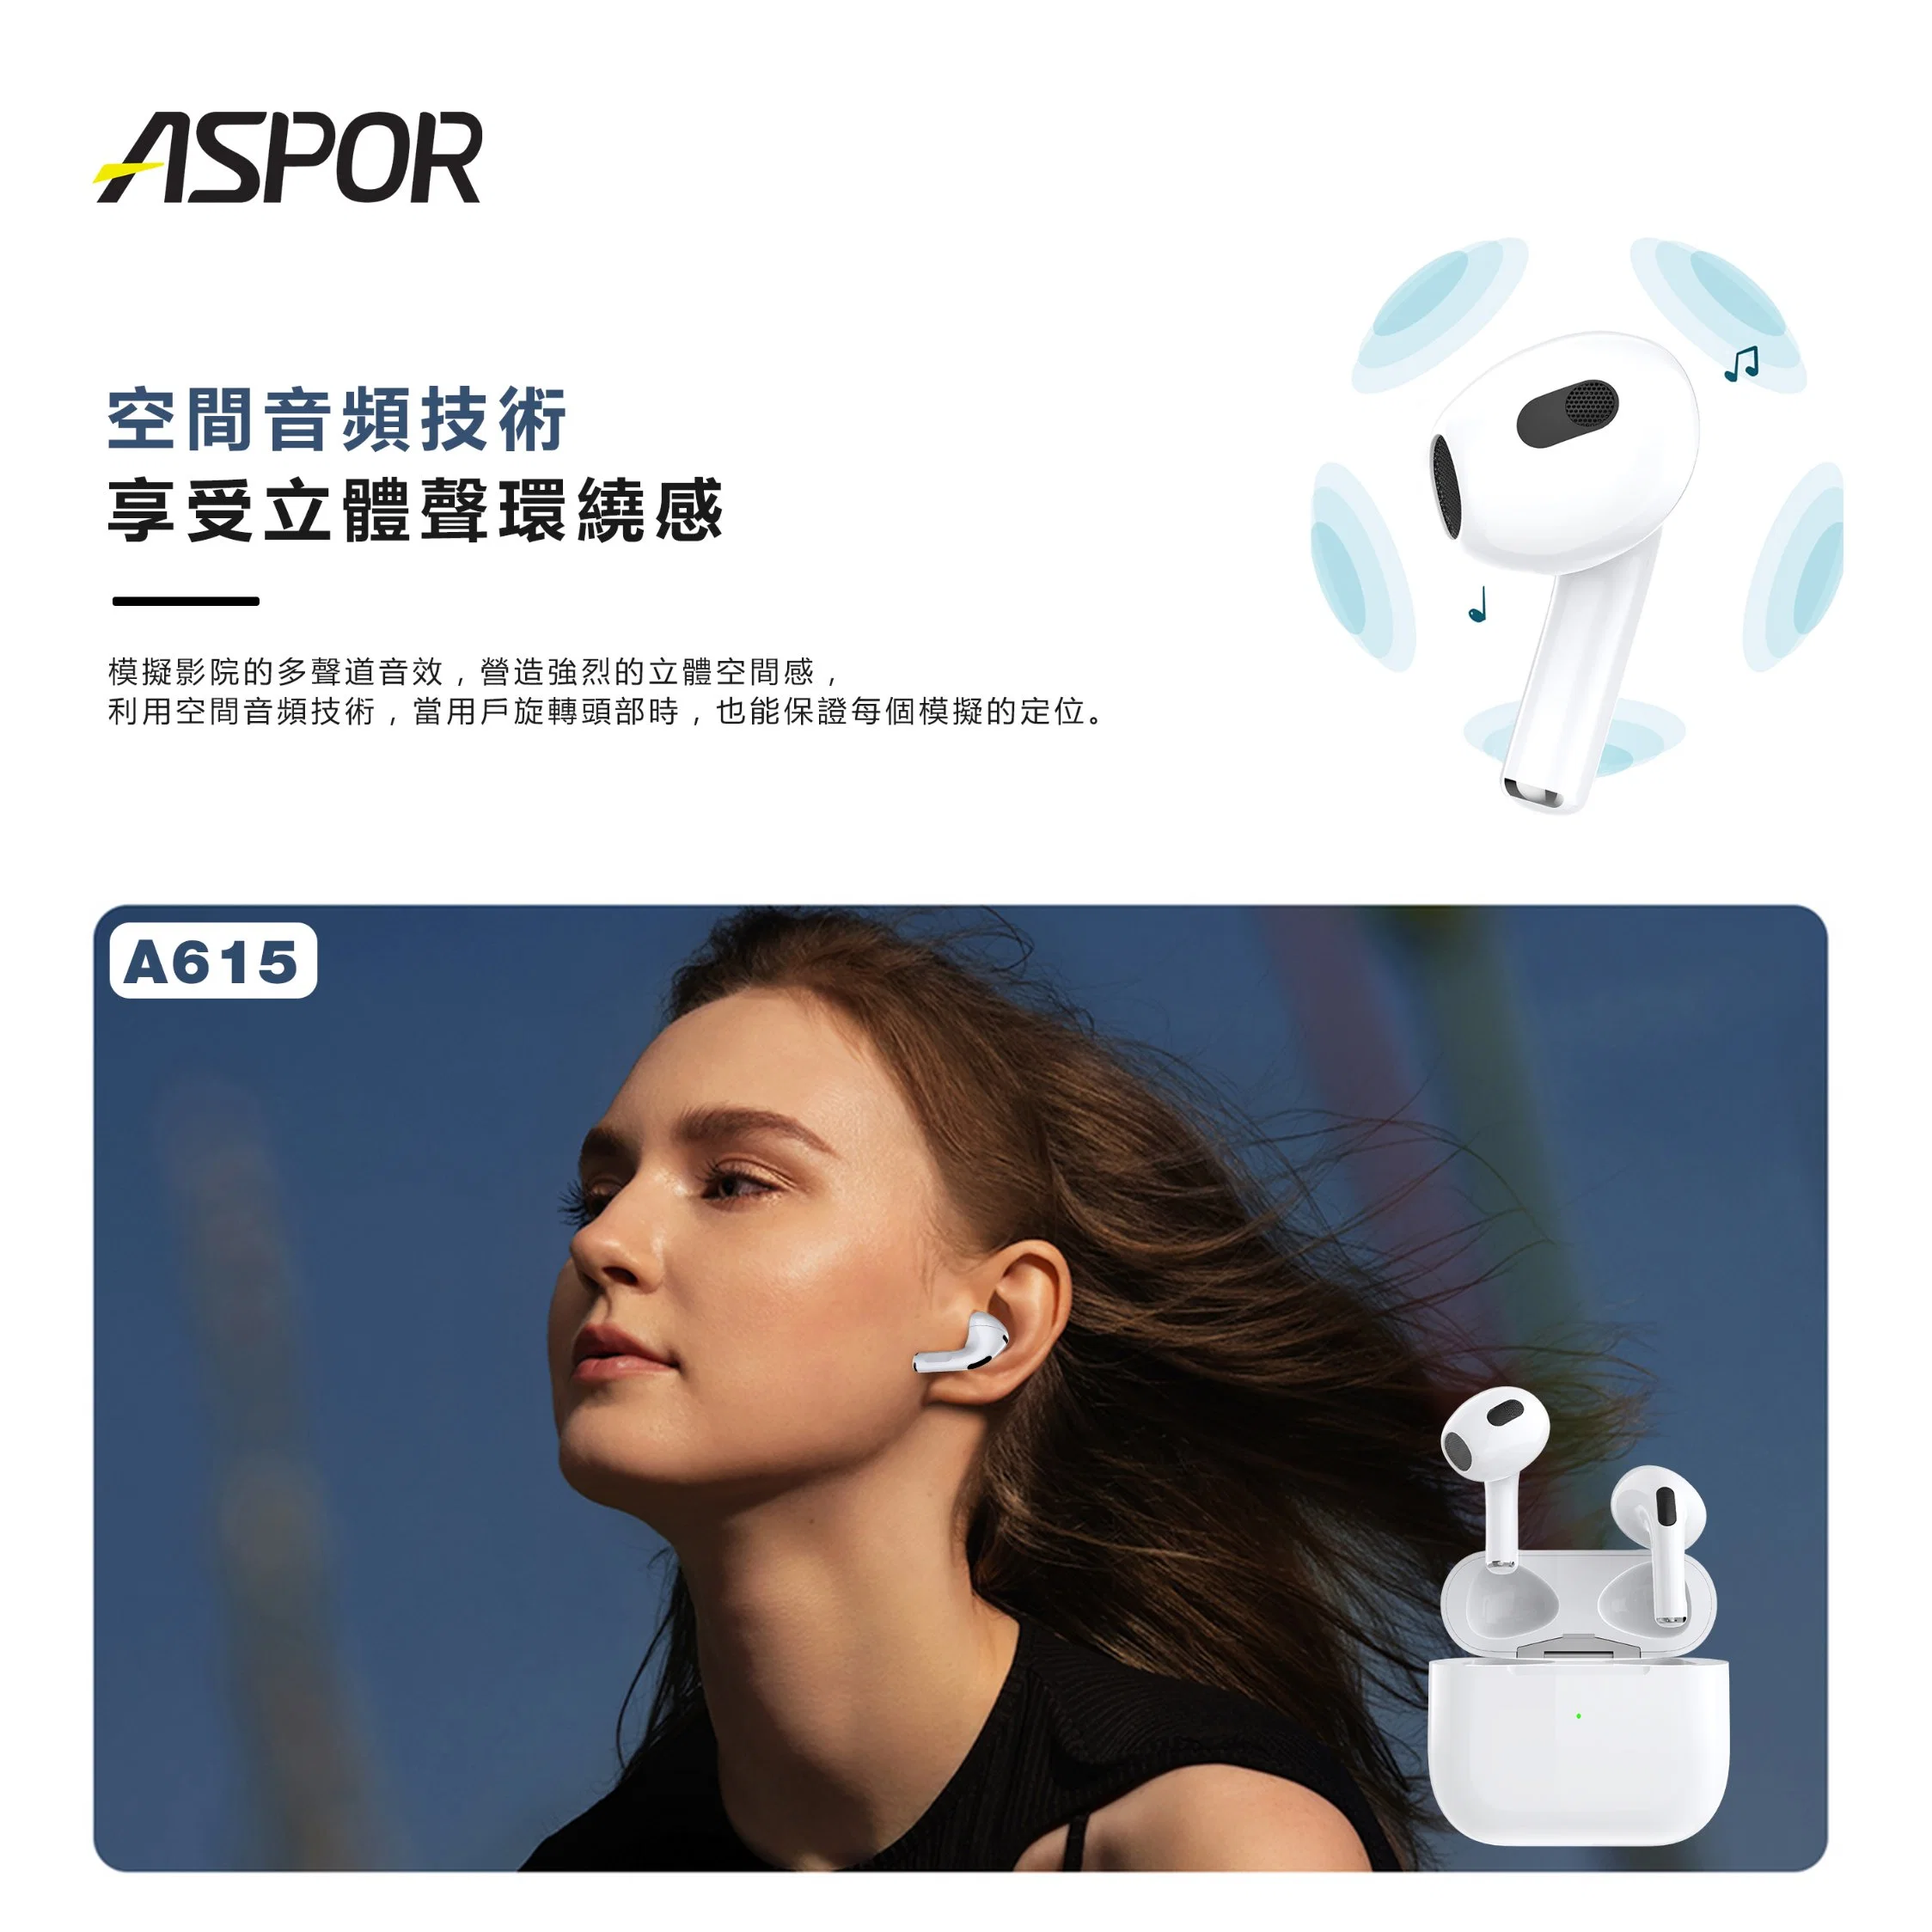 Торговая марка Aspor поддерживает беспроводной зарядки 3 поколений белый гарнитуры Bluetooth версии 5.0 можно использовать в течение 20 часов в 1,5 часов зарядки